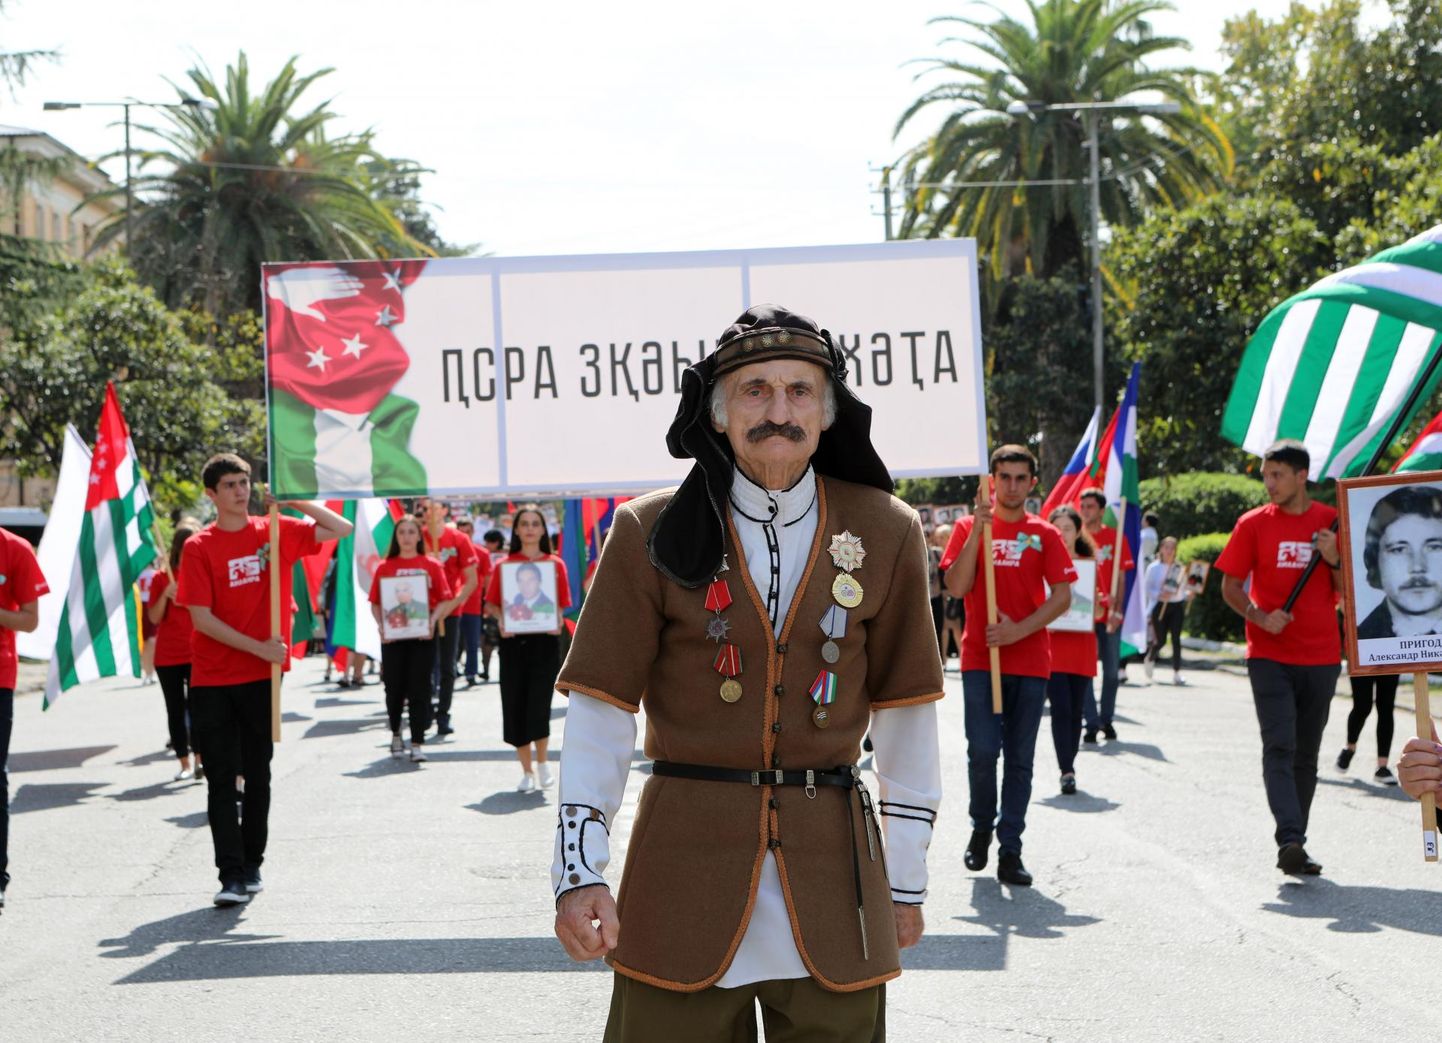 Abhaasia sõja võidu 25. aastapäeva tähistamine Suhhumis. Abhaasia sõja veteran rahvuslikus kostüümis juhtimas Abhaasia lippe lehvitavate noorte aktivistide kolonni.